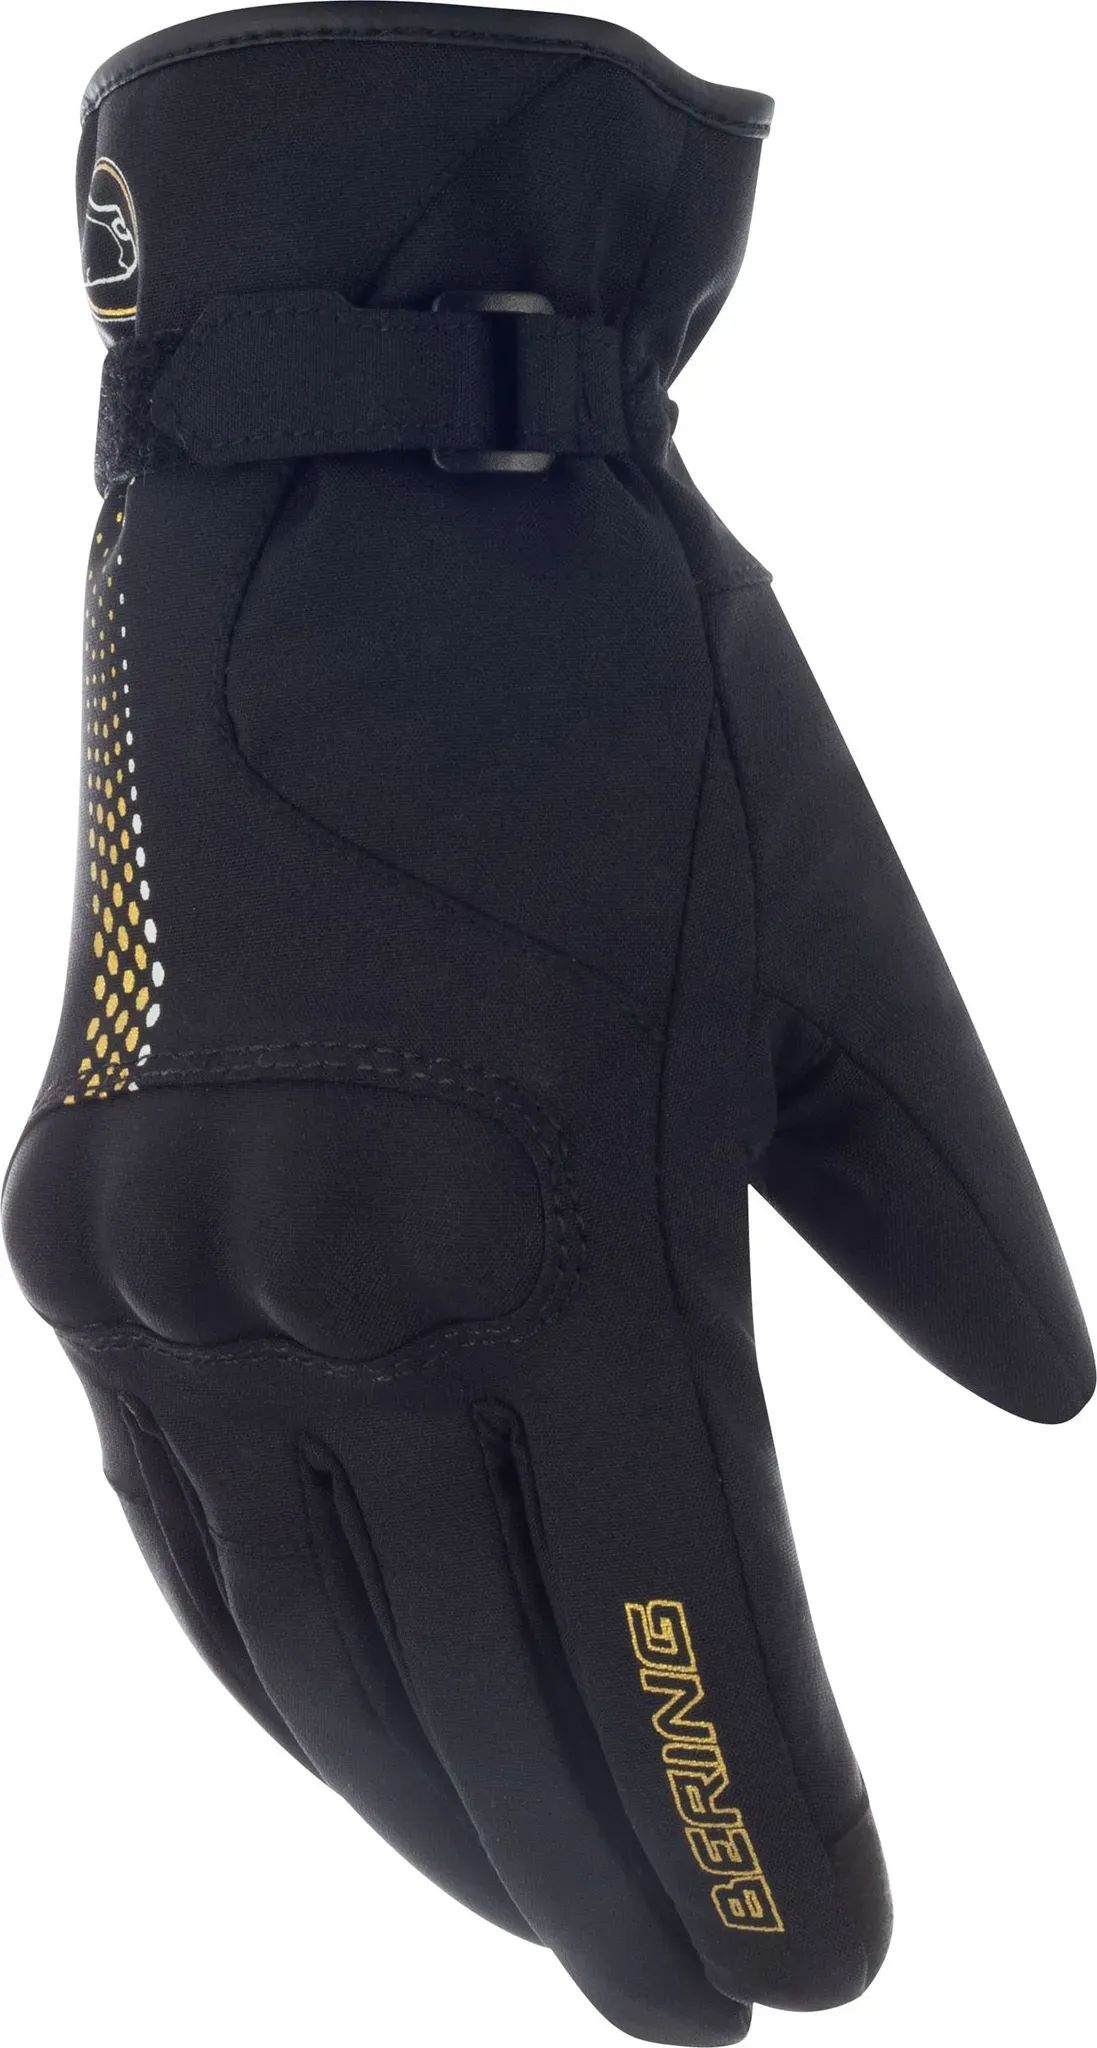 Bering Carmen, gants imperméables pour femmes - Noir/Or - 8